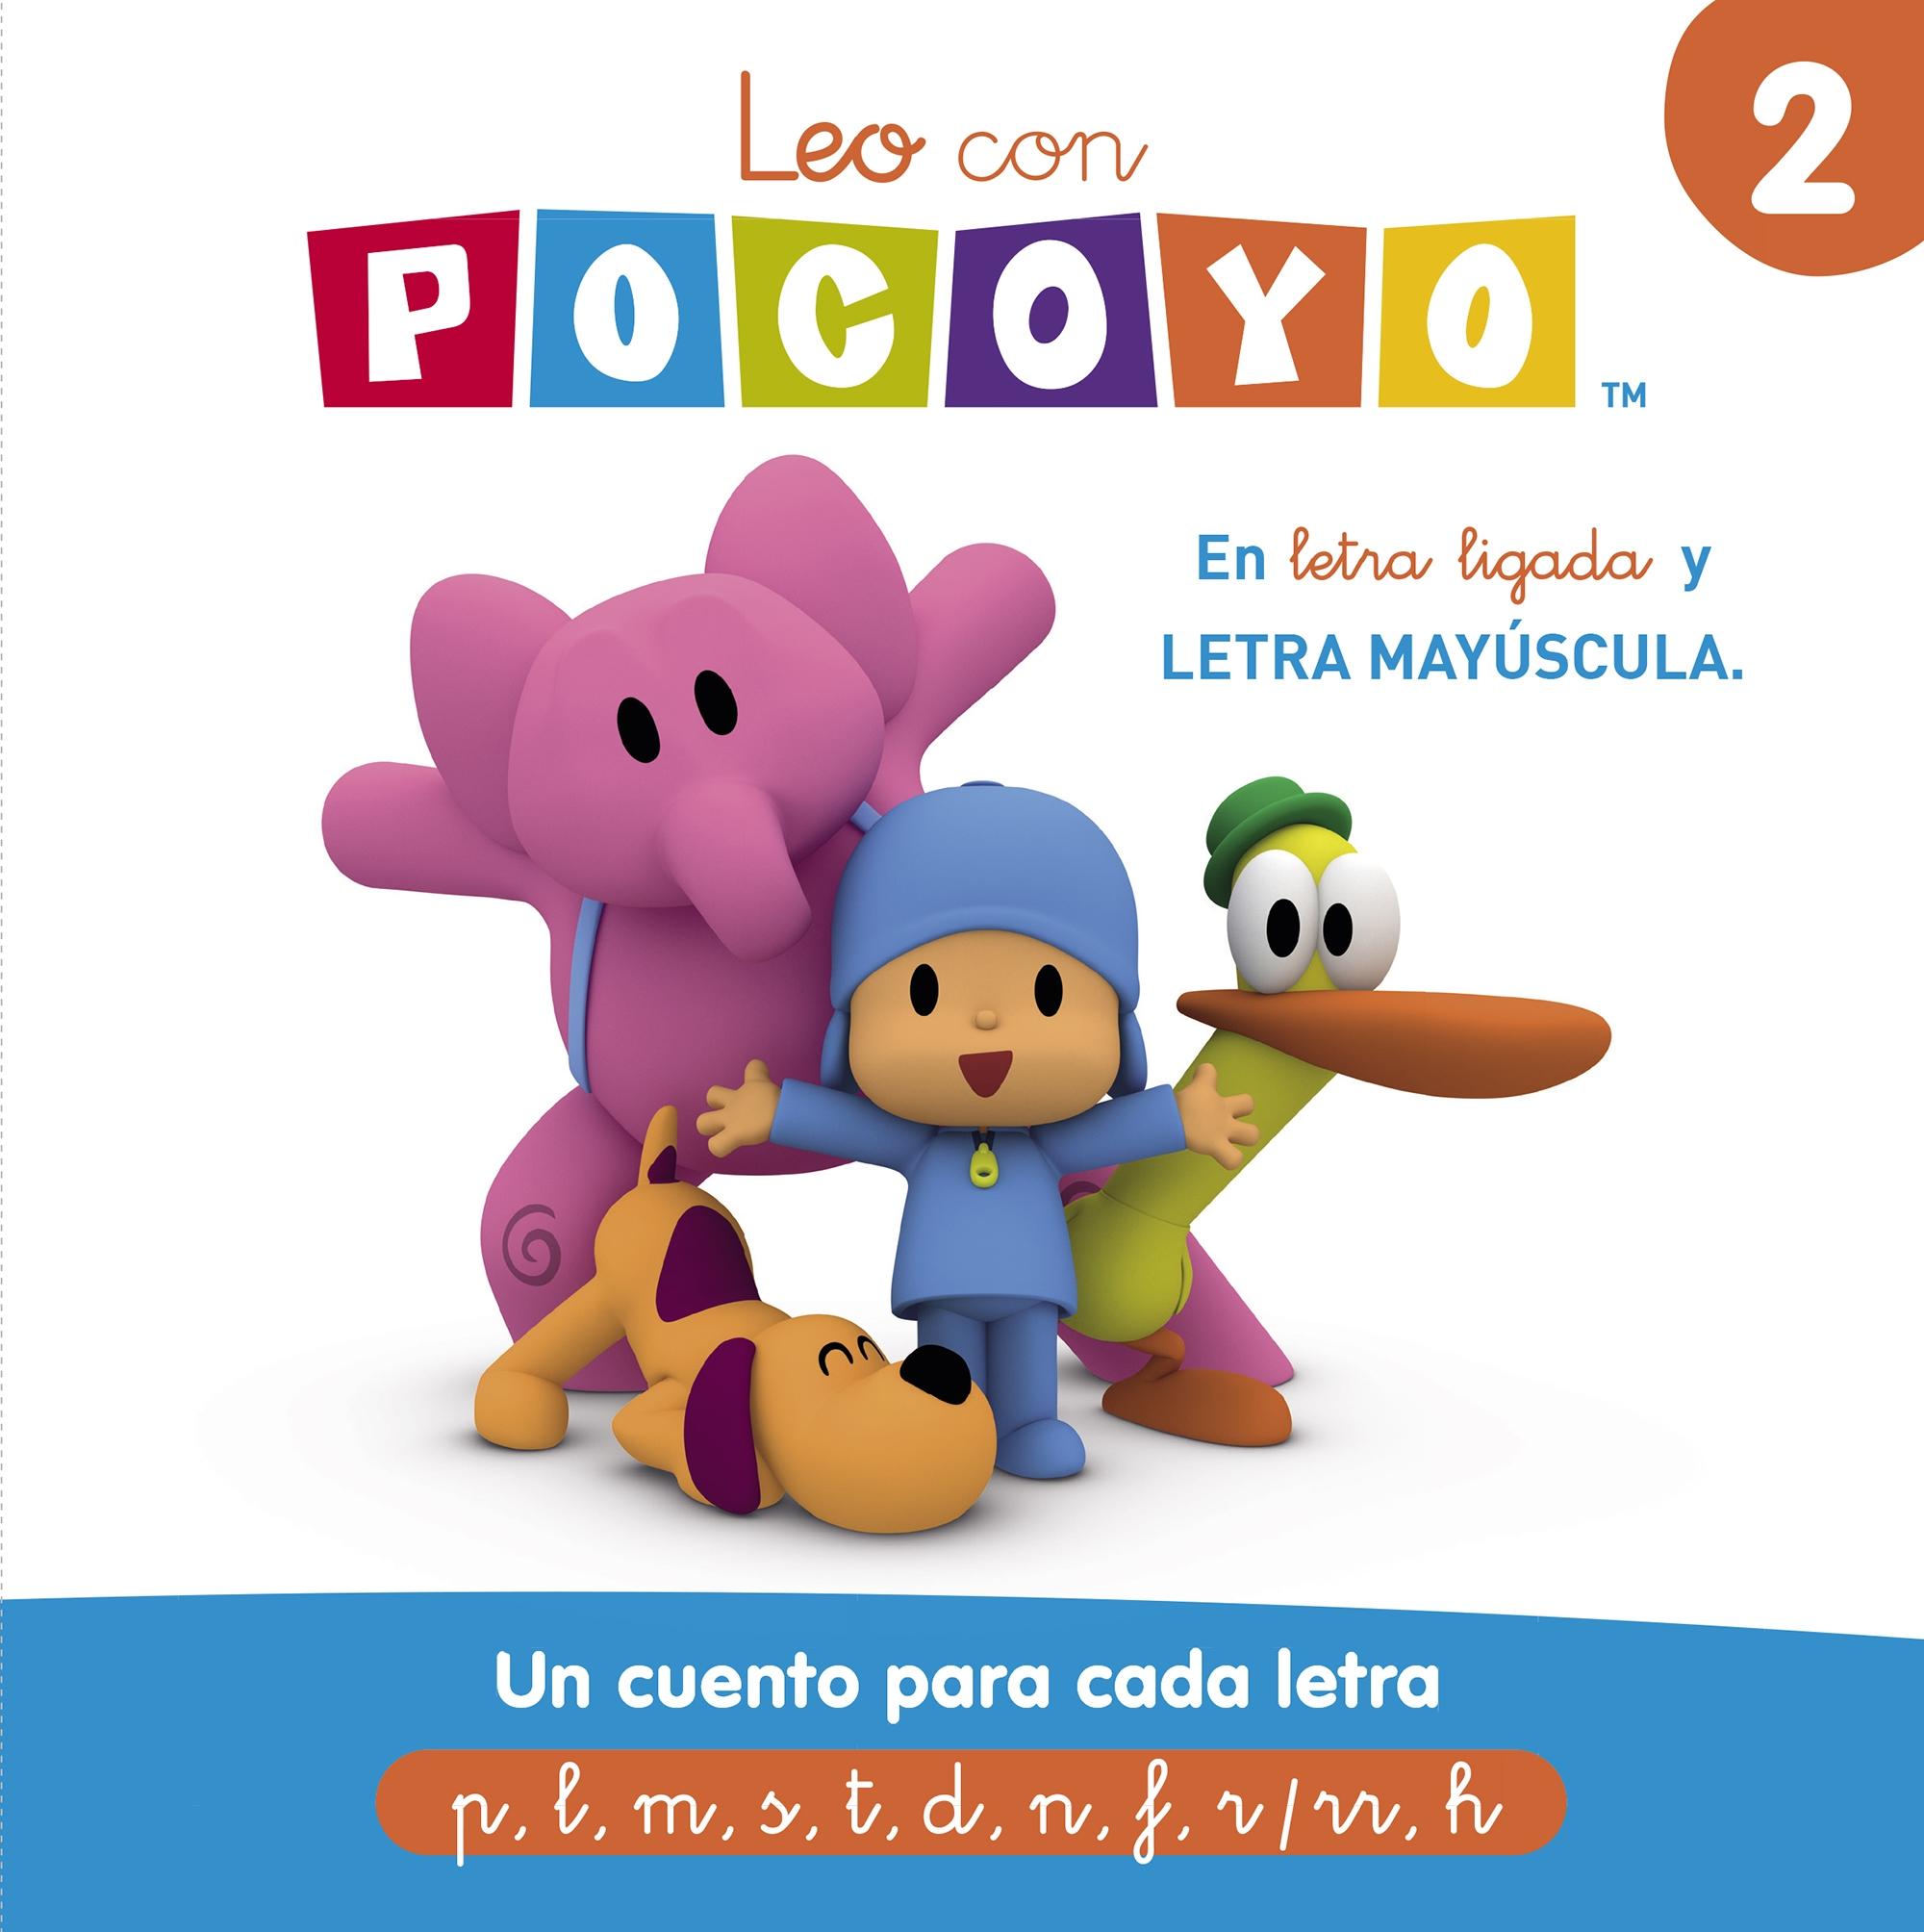 Leo con Pocoyó 2: un Cuento para Cada Letra (P, L, M, S, T, D, N, F, R/Rr, H) "Letra Ligada y Meyúscula". 